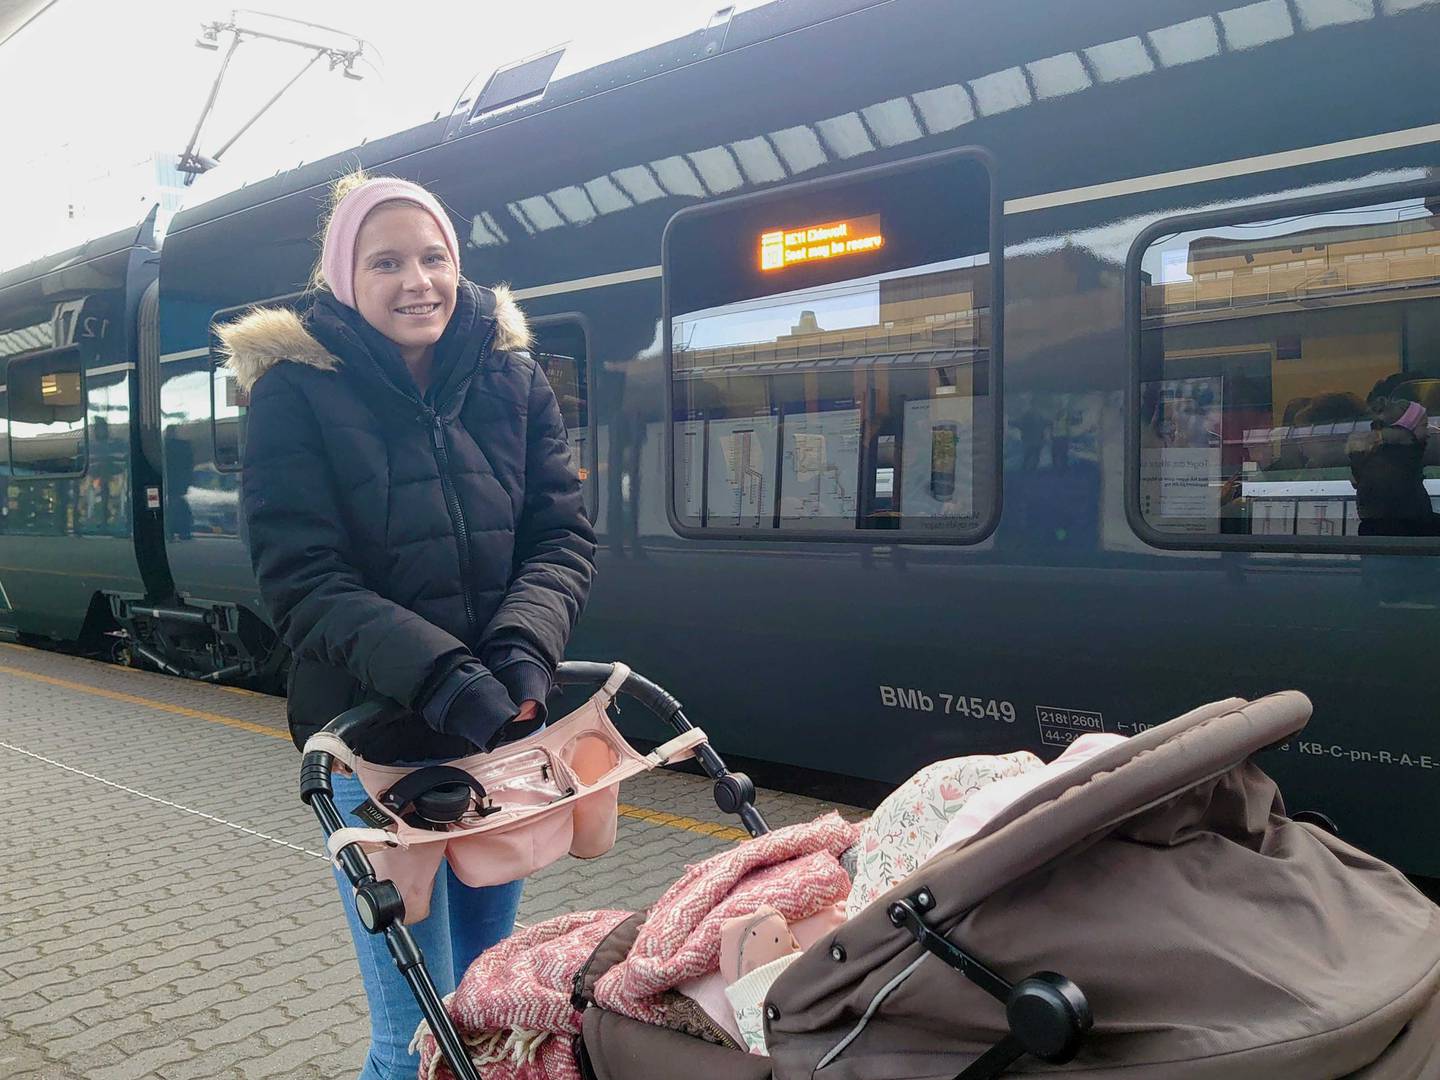 Pernille Dokken hadde kommet fra Tønsberg til Oslo for å besøke familie mandag. Turen ble forsinket av togkaoset som oppsto.